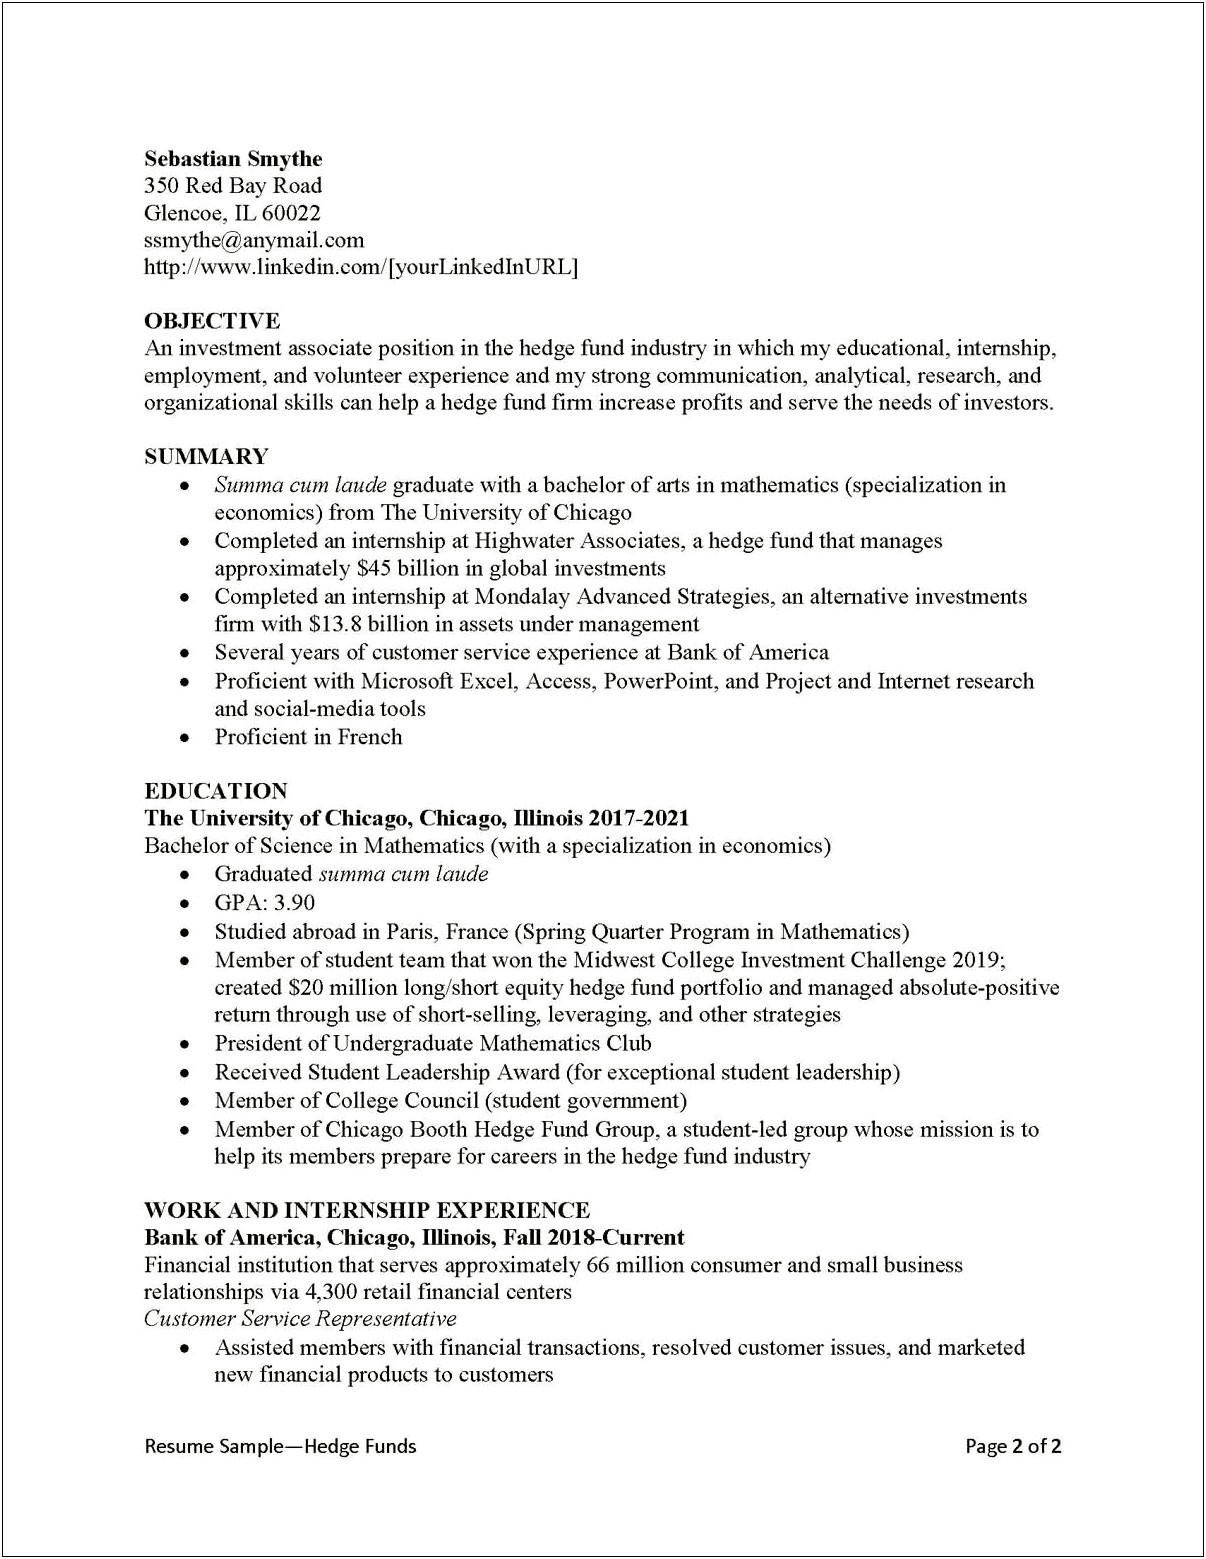 Help Desk Manager Job Description Resume